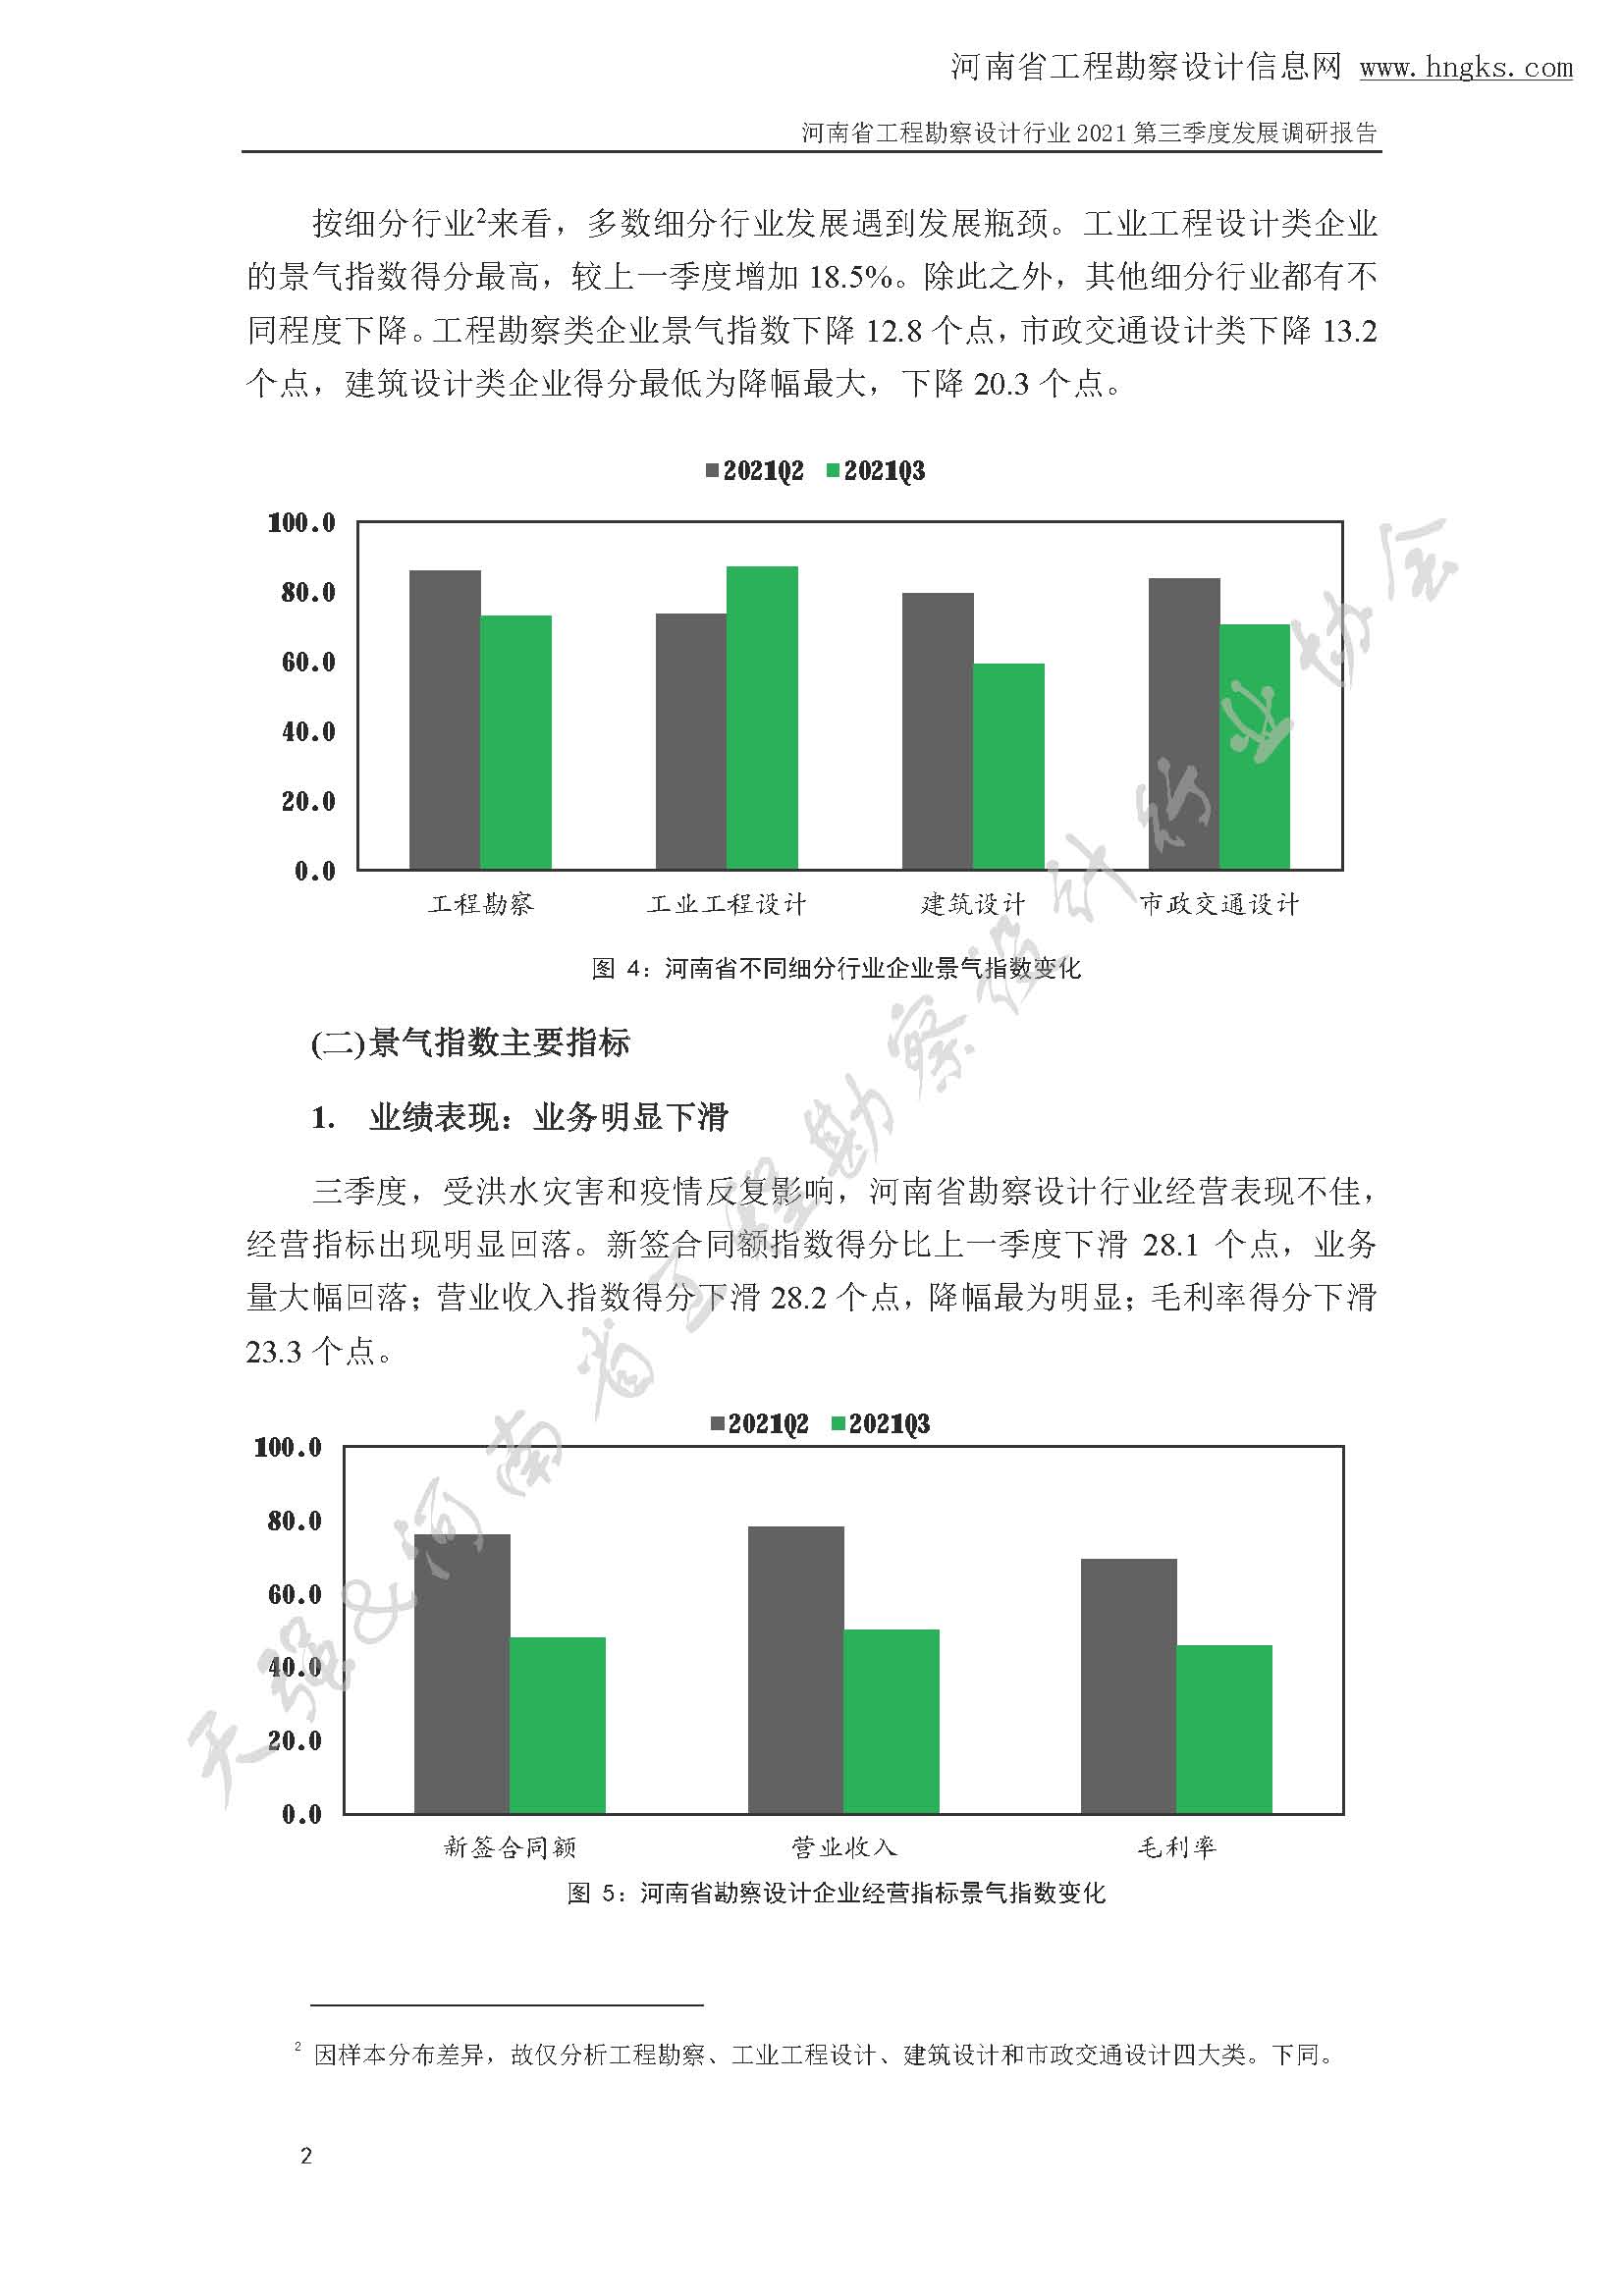 河南省工程勘察设计企业2021年第三季度发展调研报告-公开版_页面_05.jpg